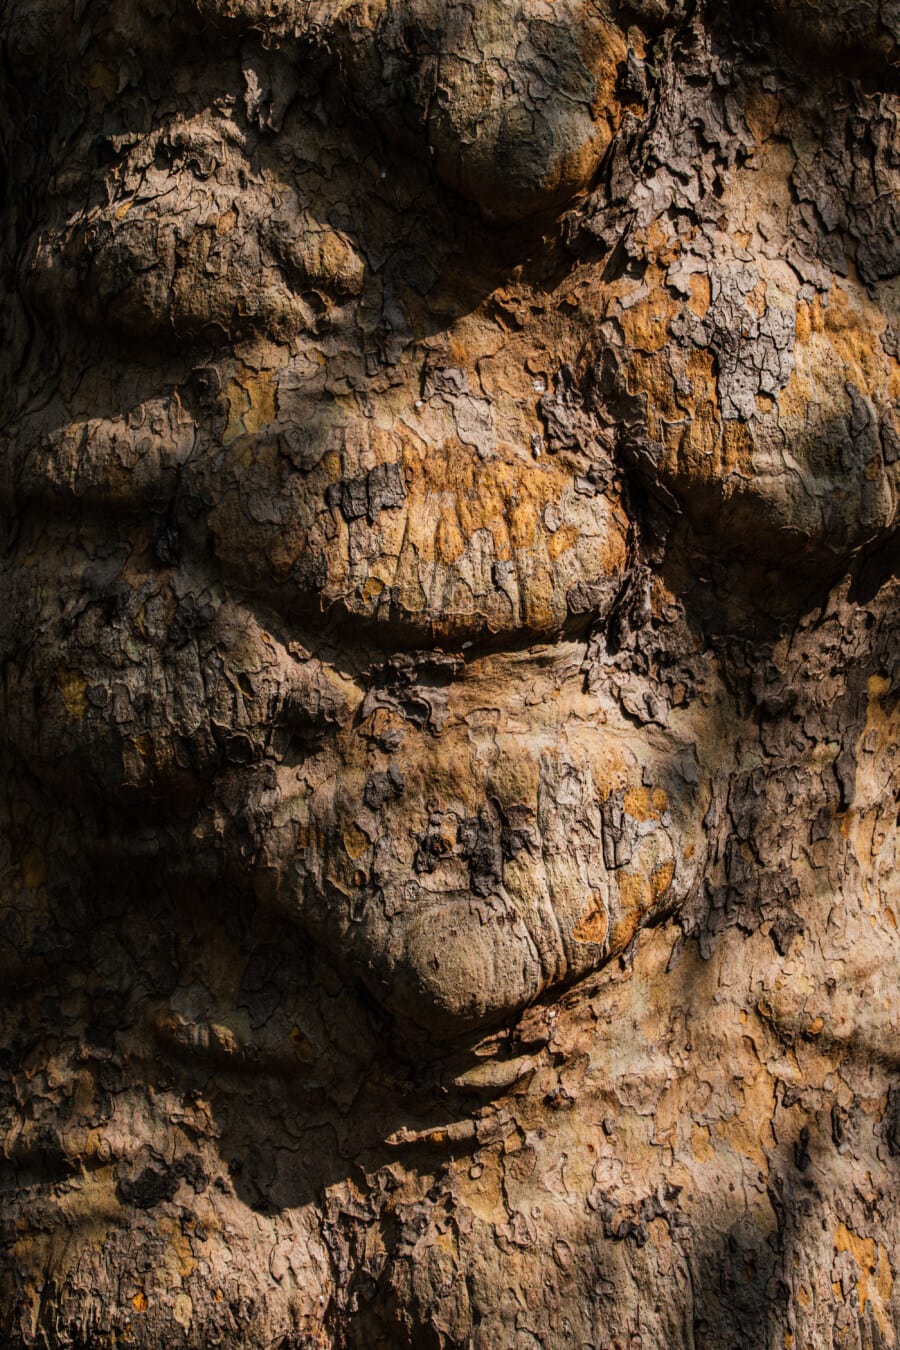 detaliu, scoarţă de copac, textura, cortexul, copac, până aproape, umbra, natura, stare brută, murdare